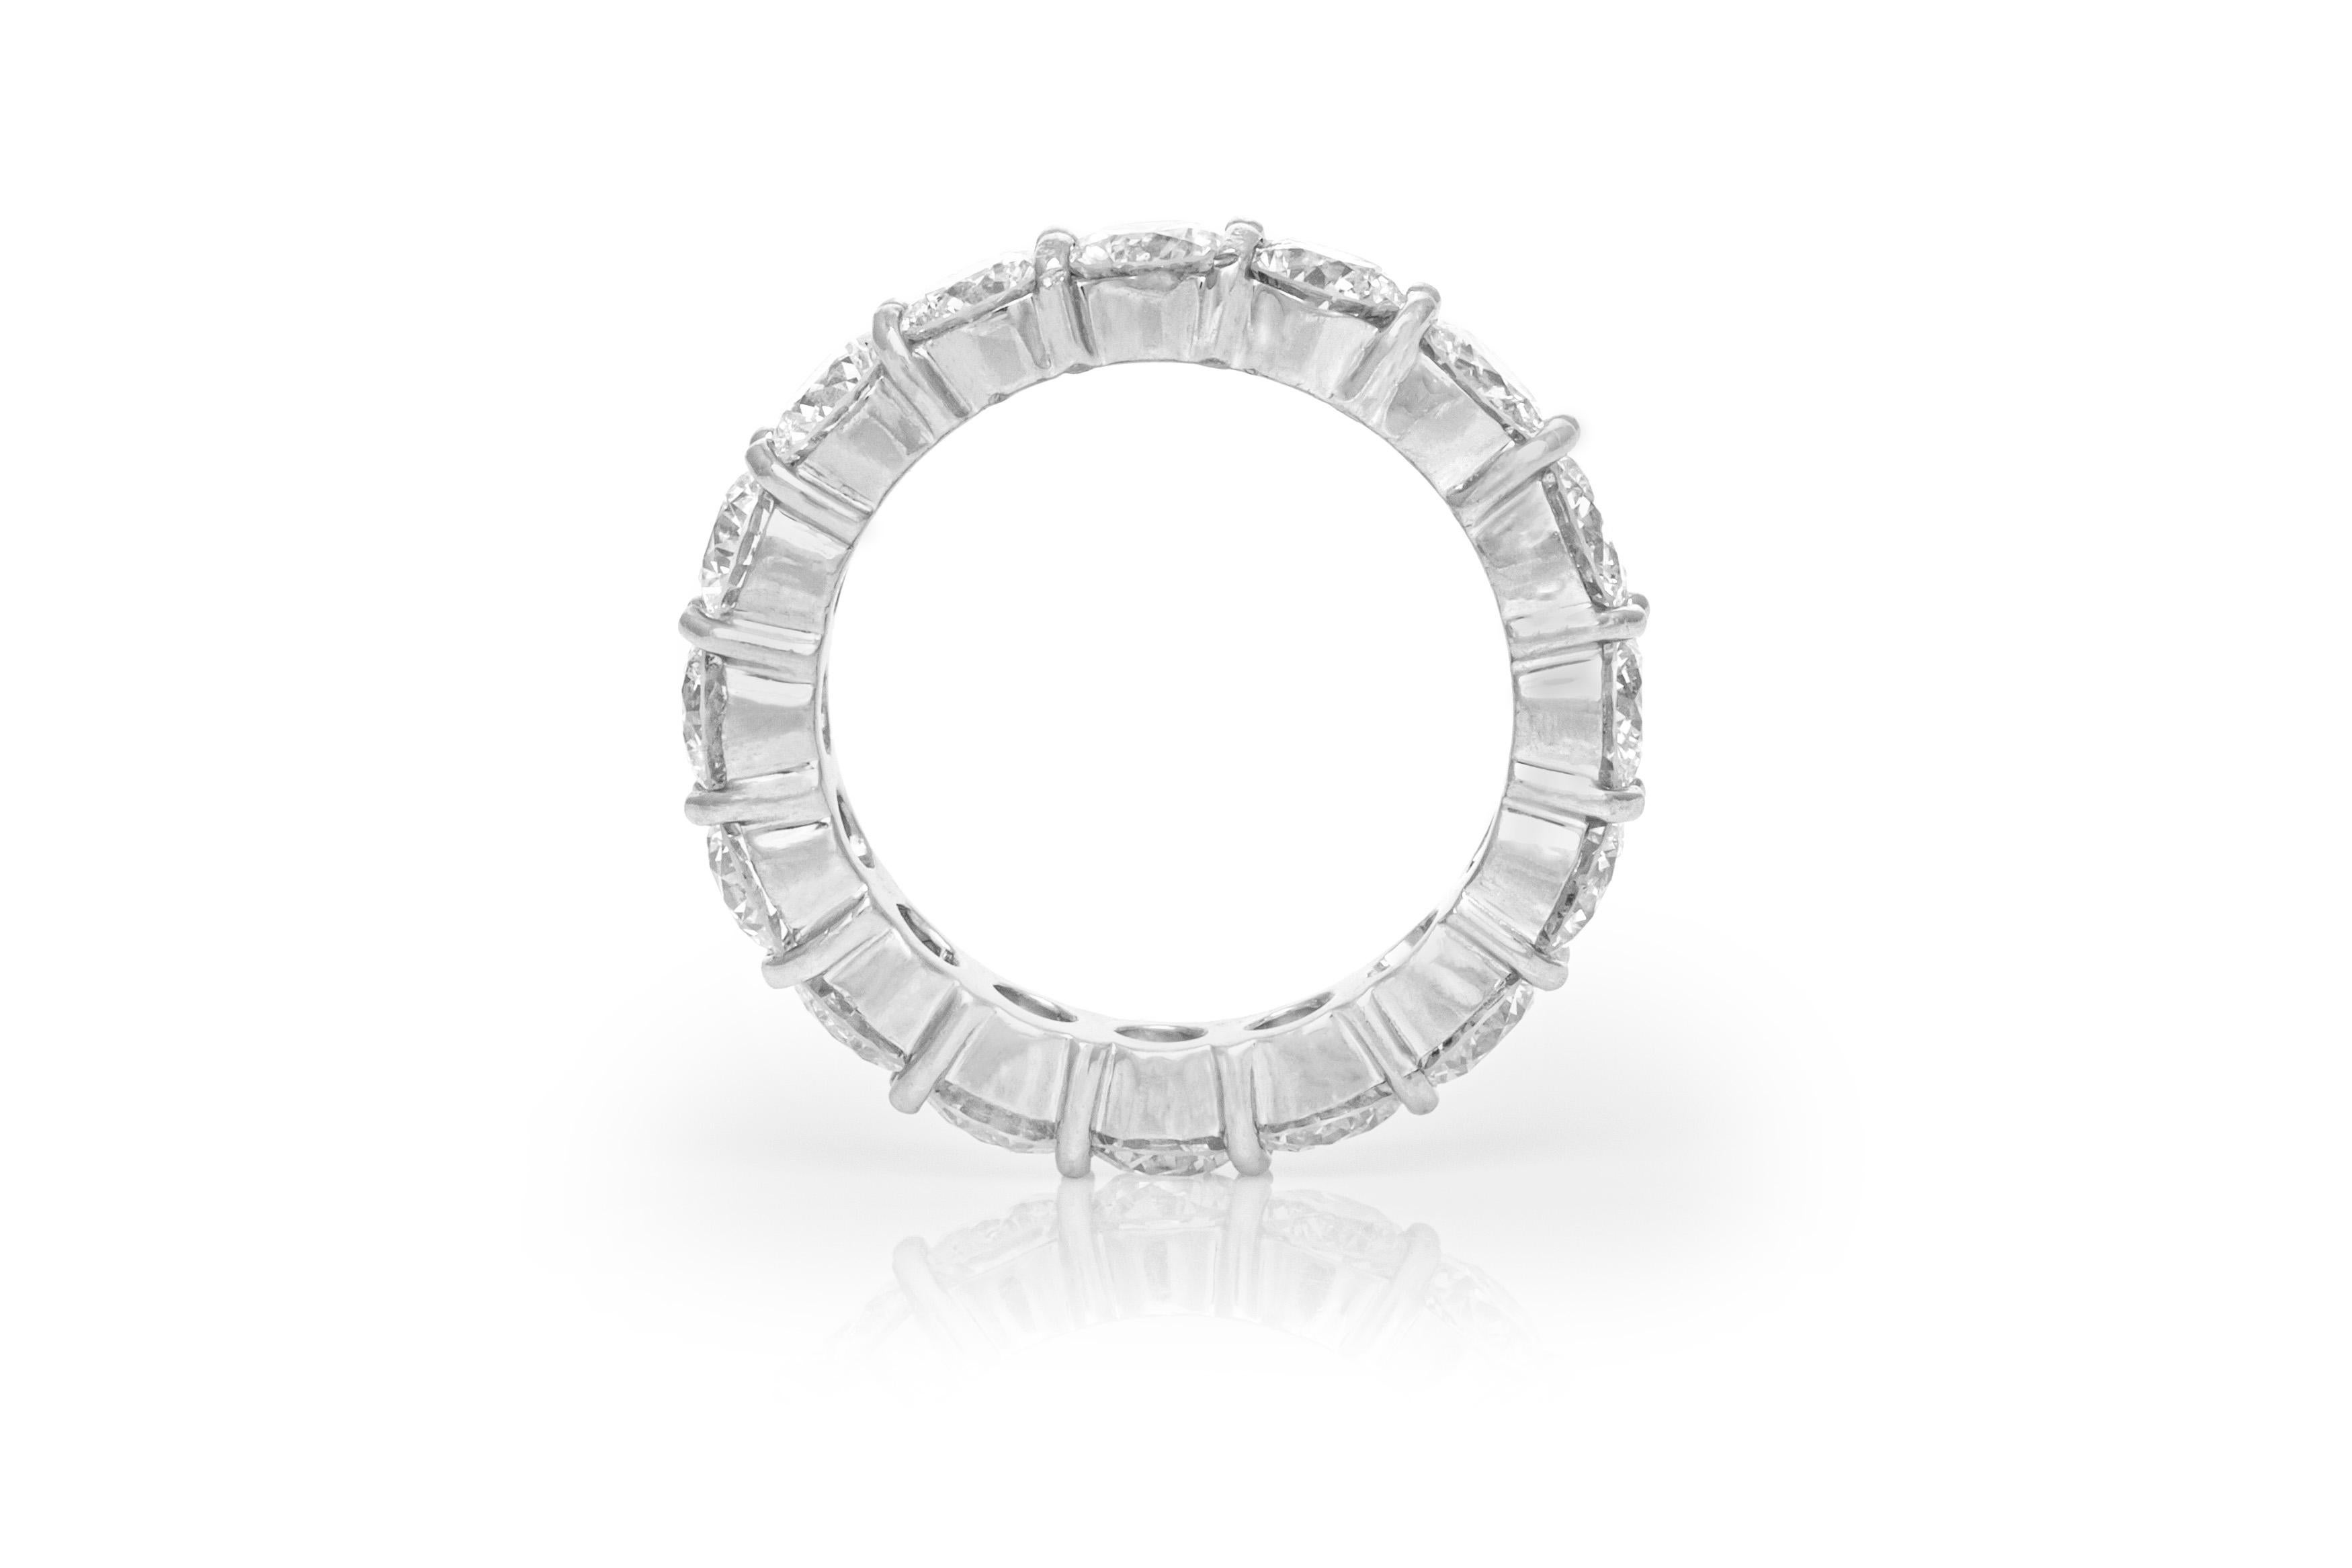 Der Ring ist fein in Platin gefertigt und mit runden Diamanten besetzt, die insgesamt 4,46 Karat wiegen.